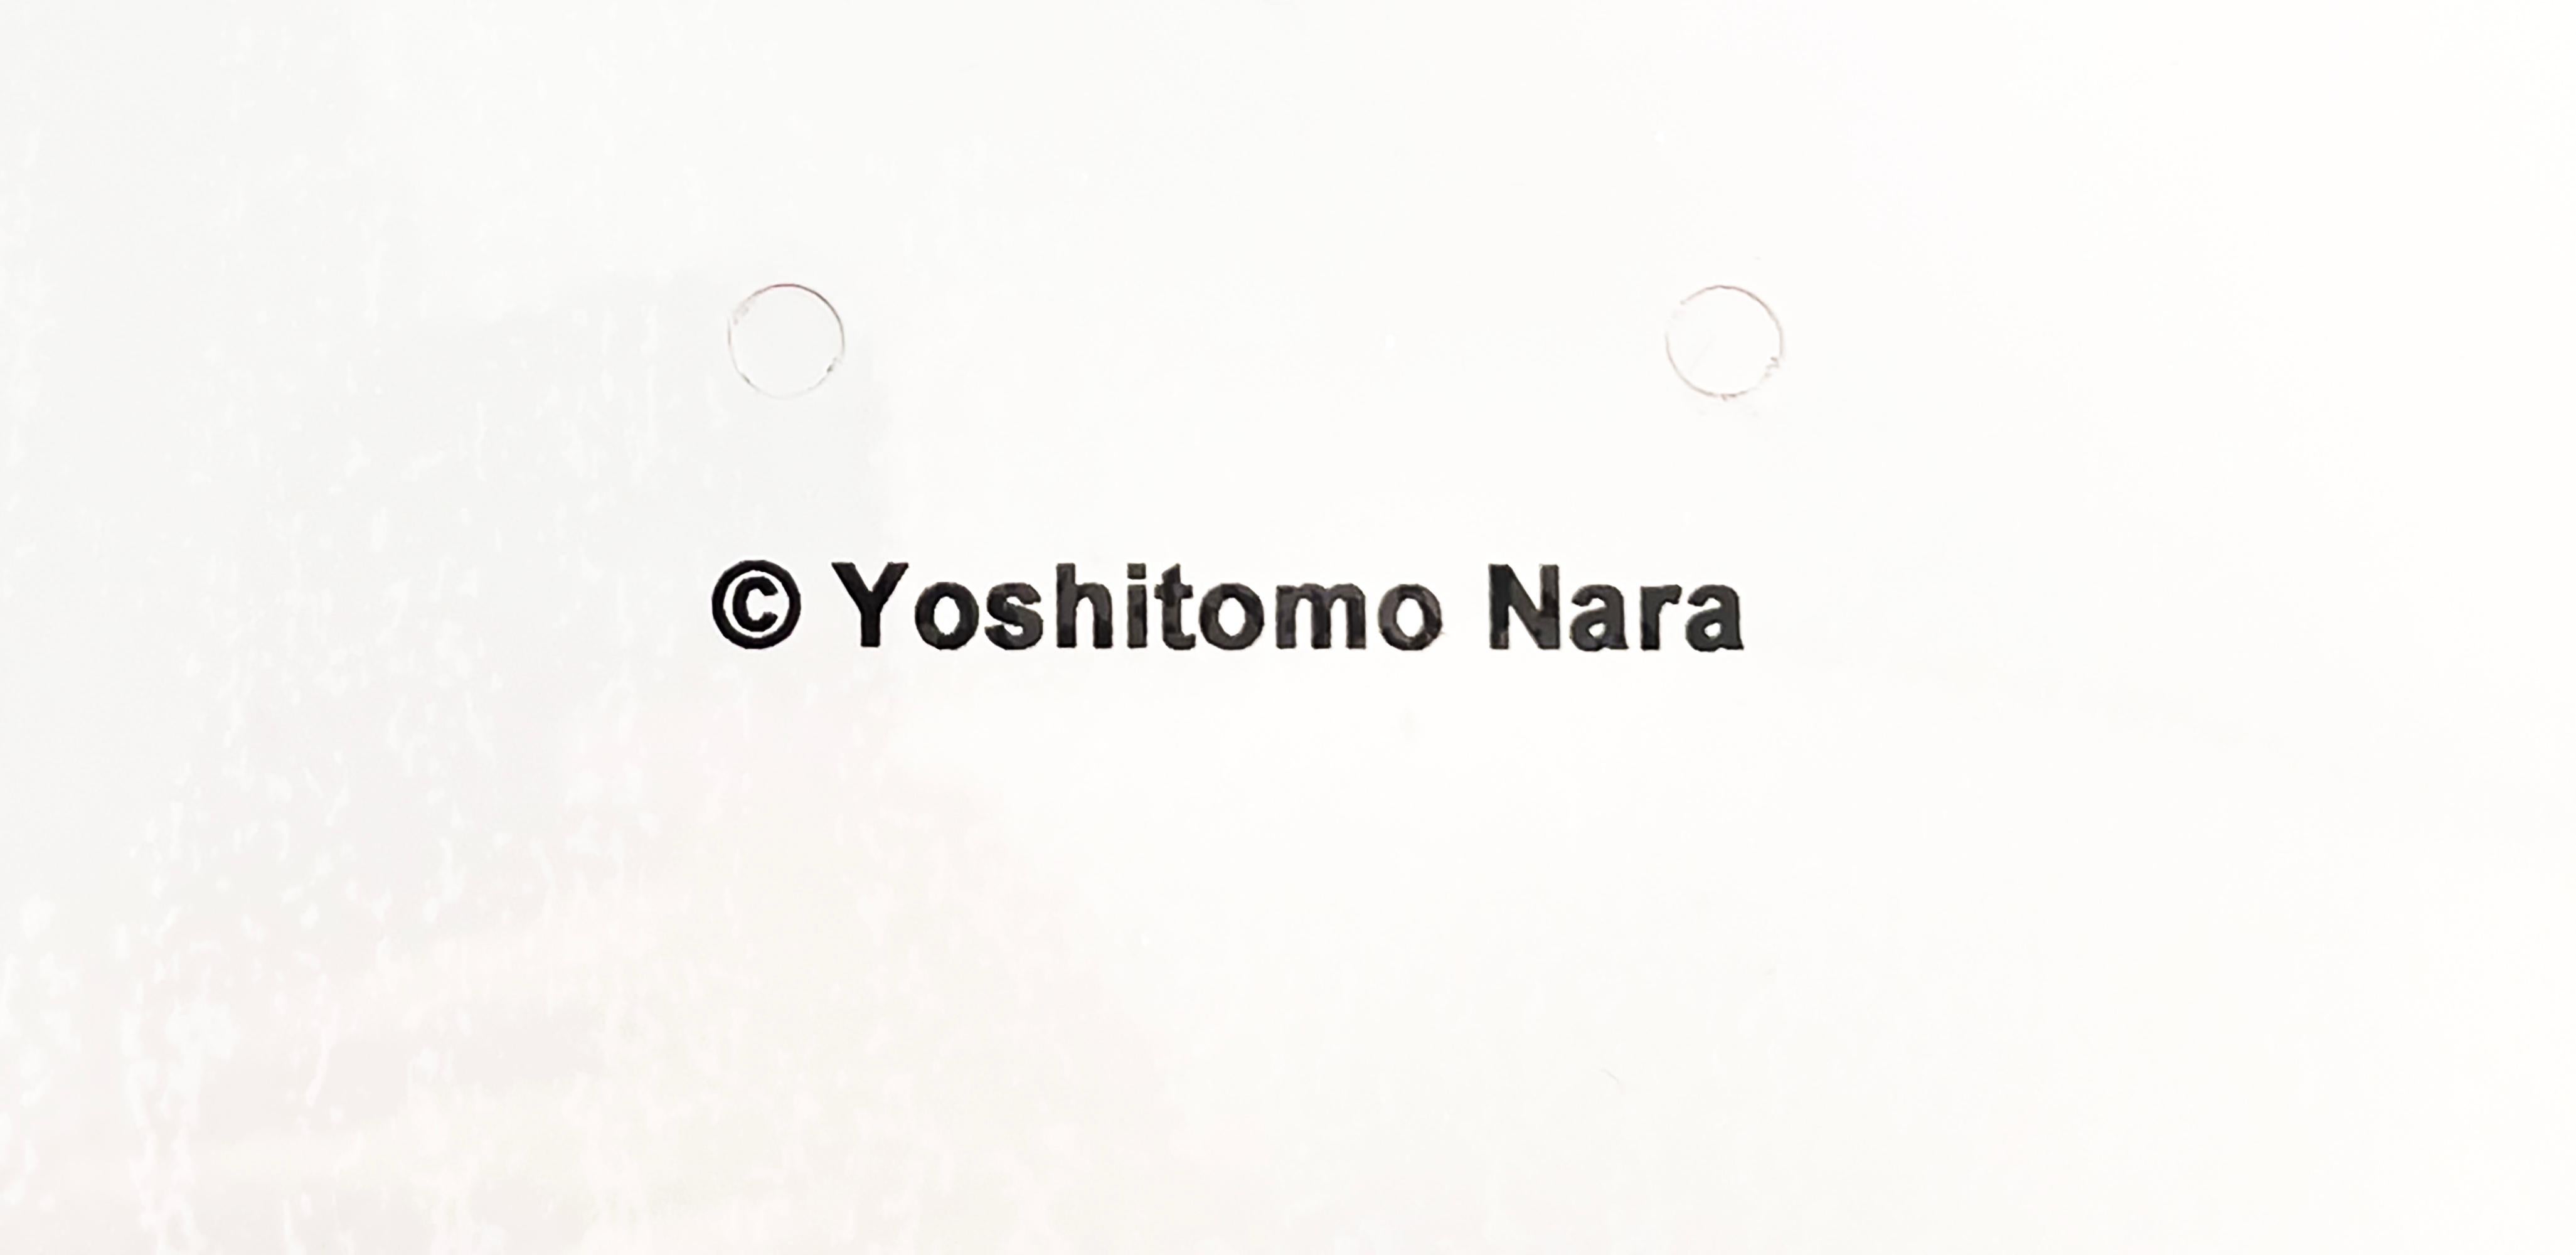 Yoshitomo Nara Skateboard Deck (Yoshitomo Nara Solid Fist)  1